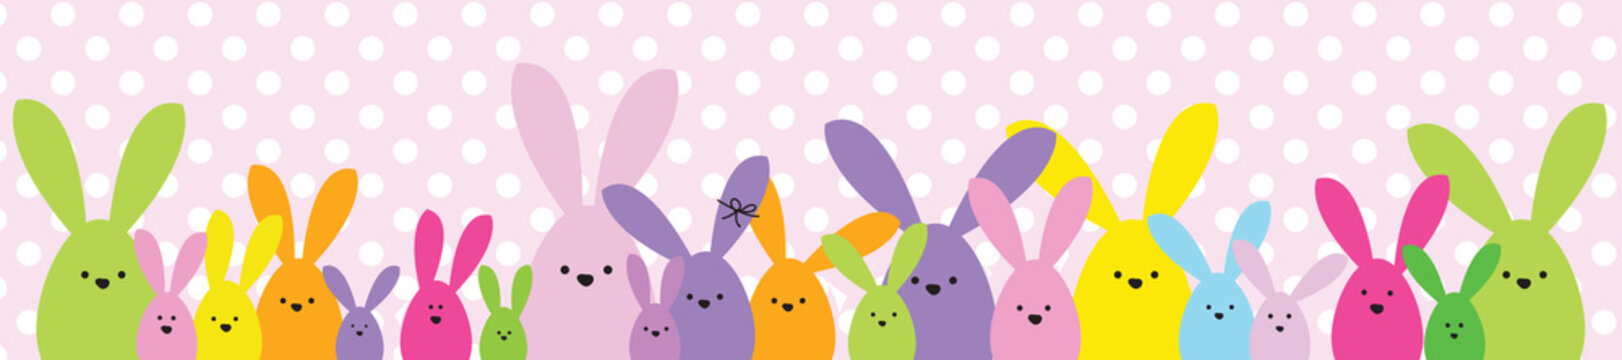 Easter banner. Easter bunny family. Design element.